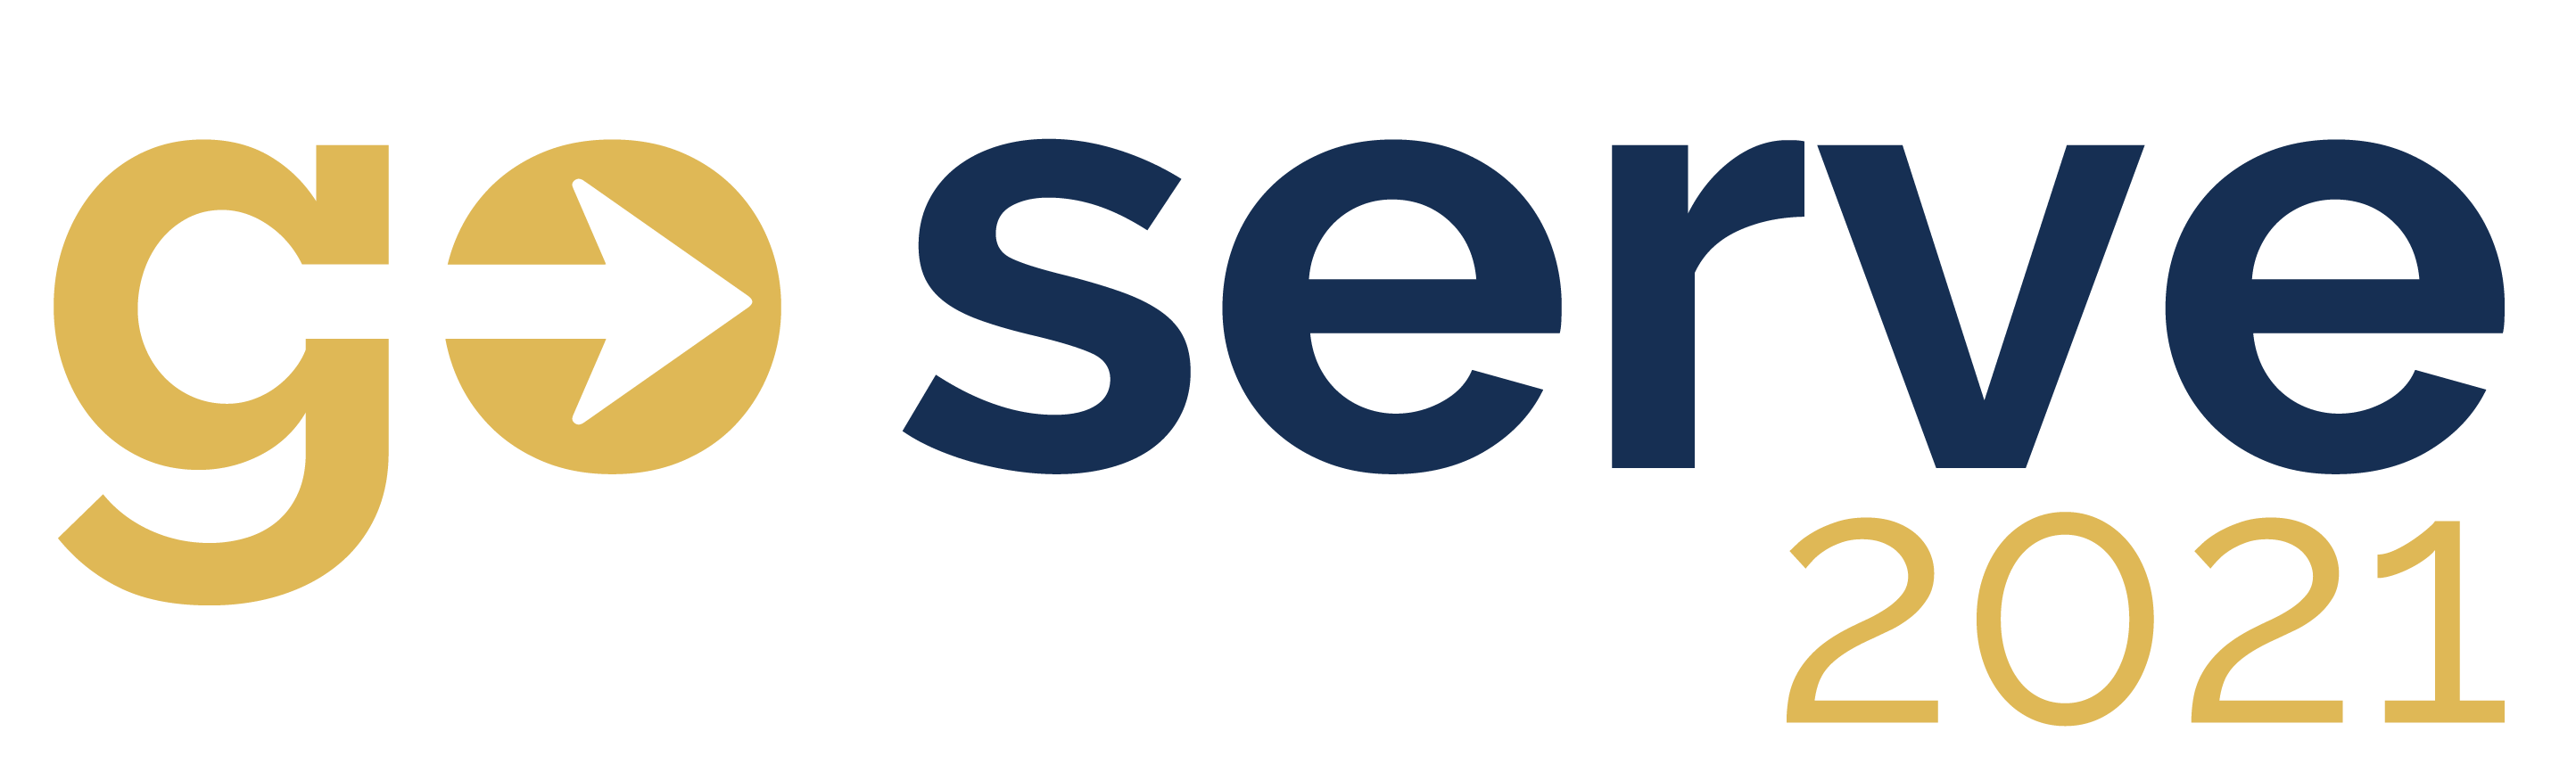 GS 2021 Logo